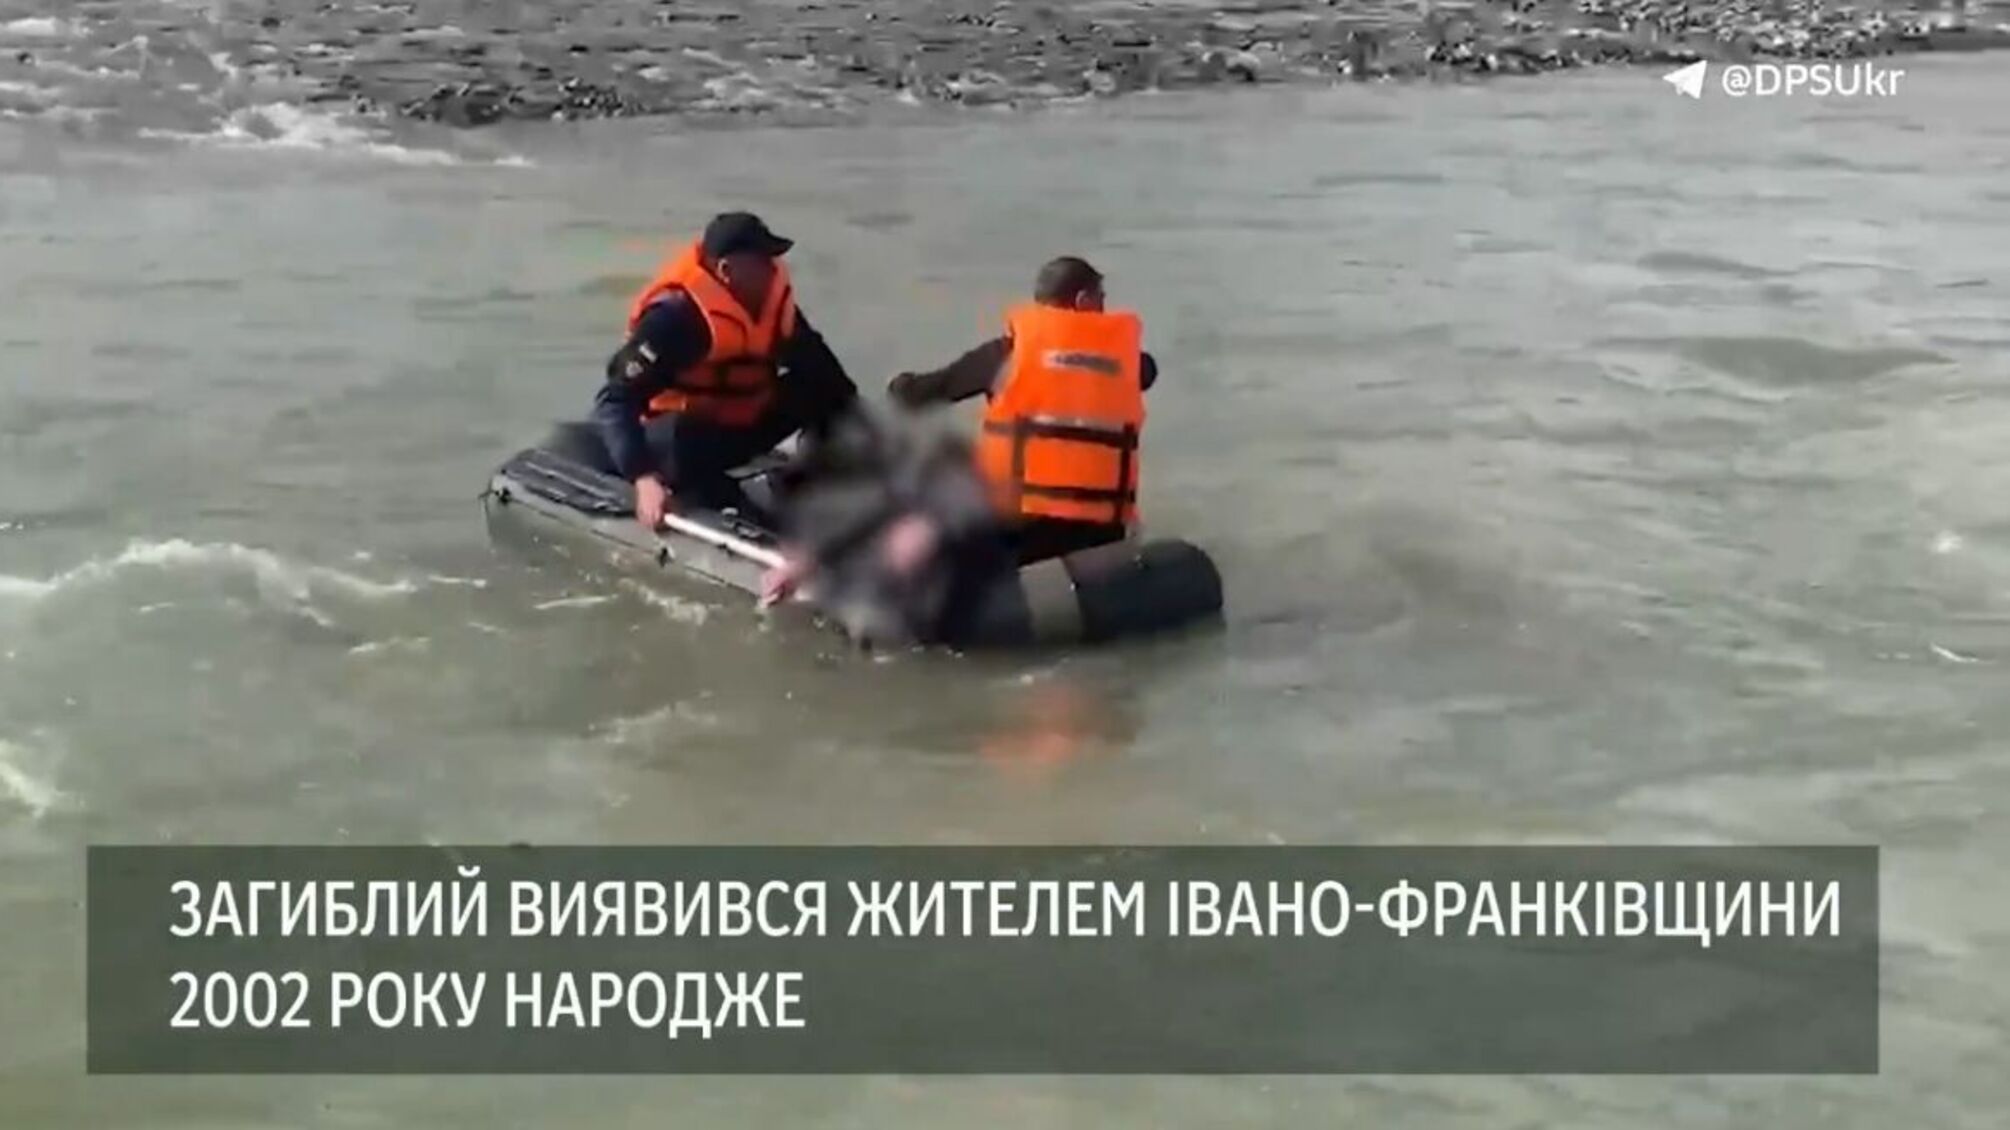  У річці Тиса на Закарпатті виявили тіло 21-річного чоловіка